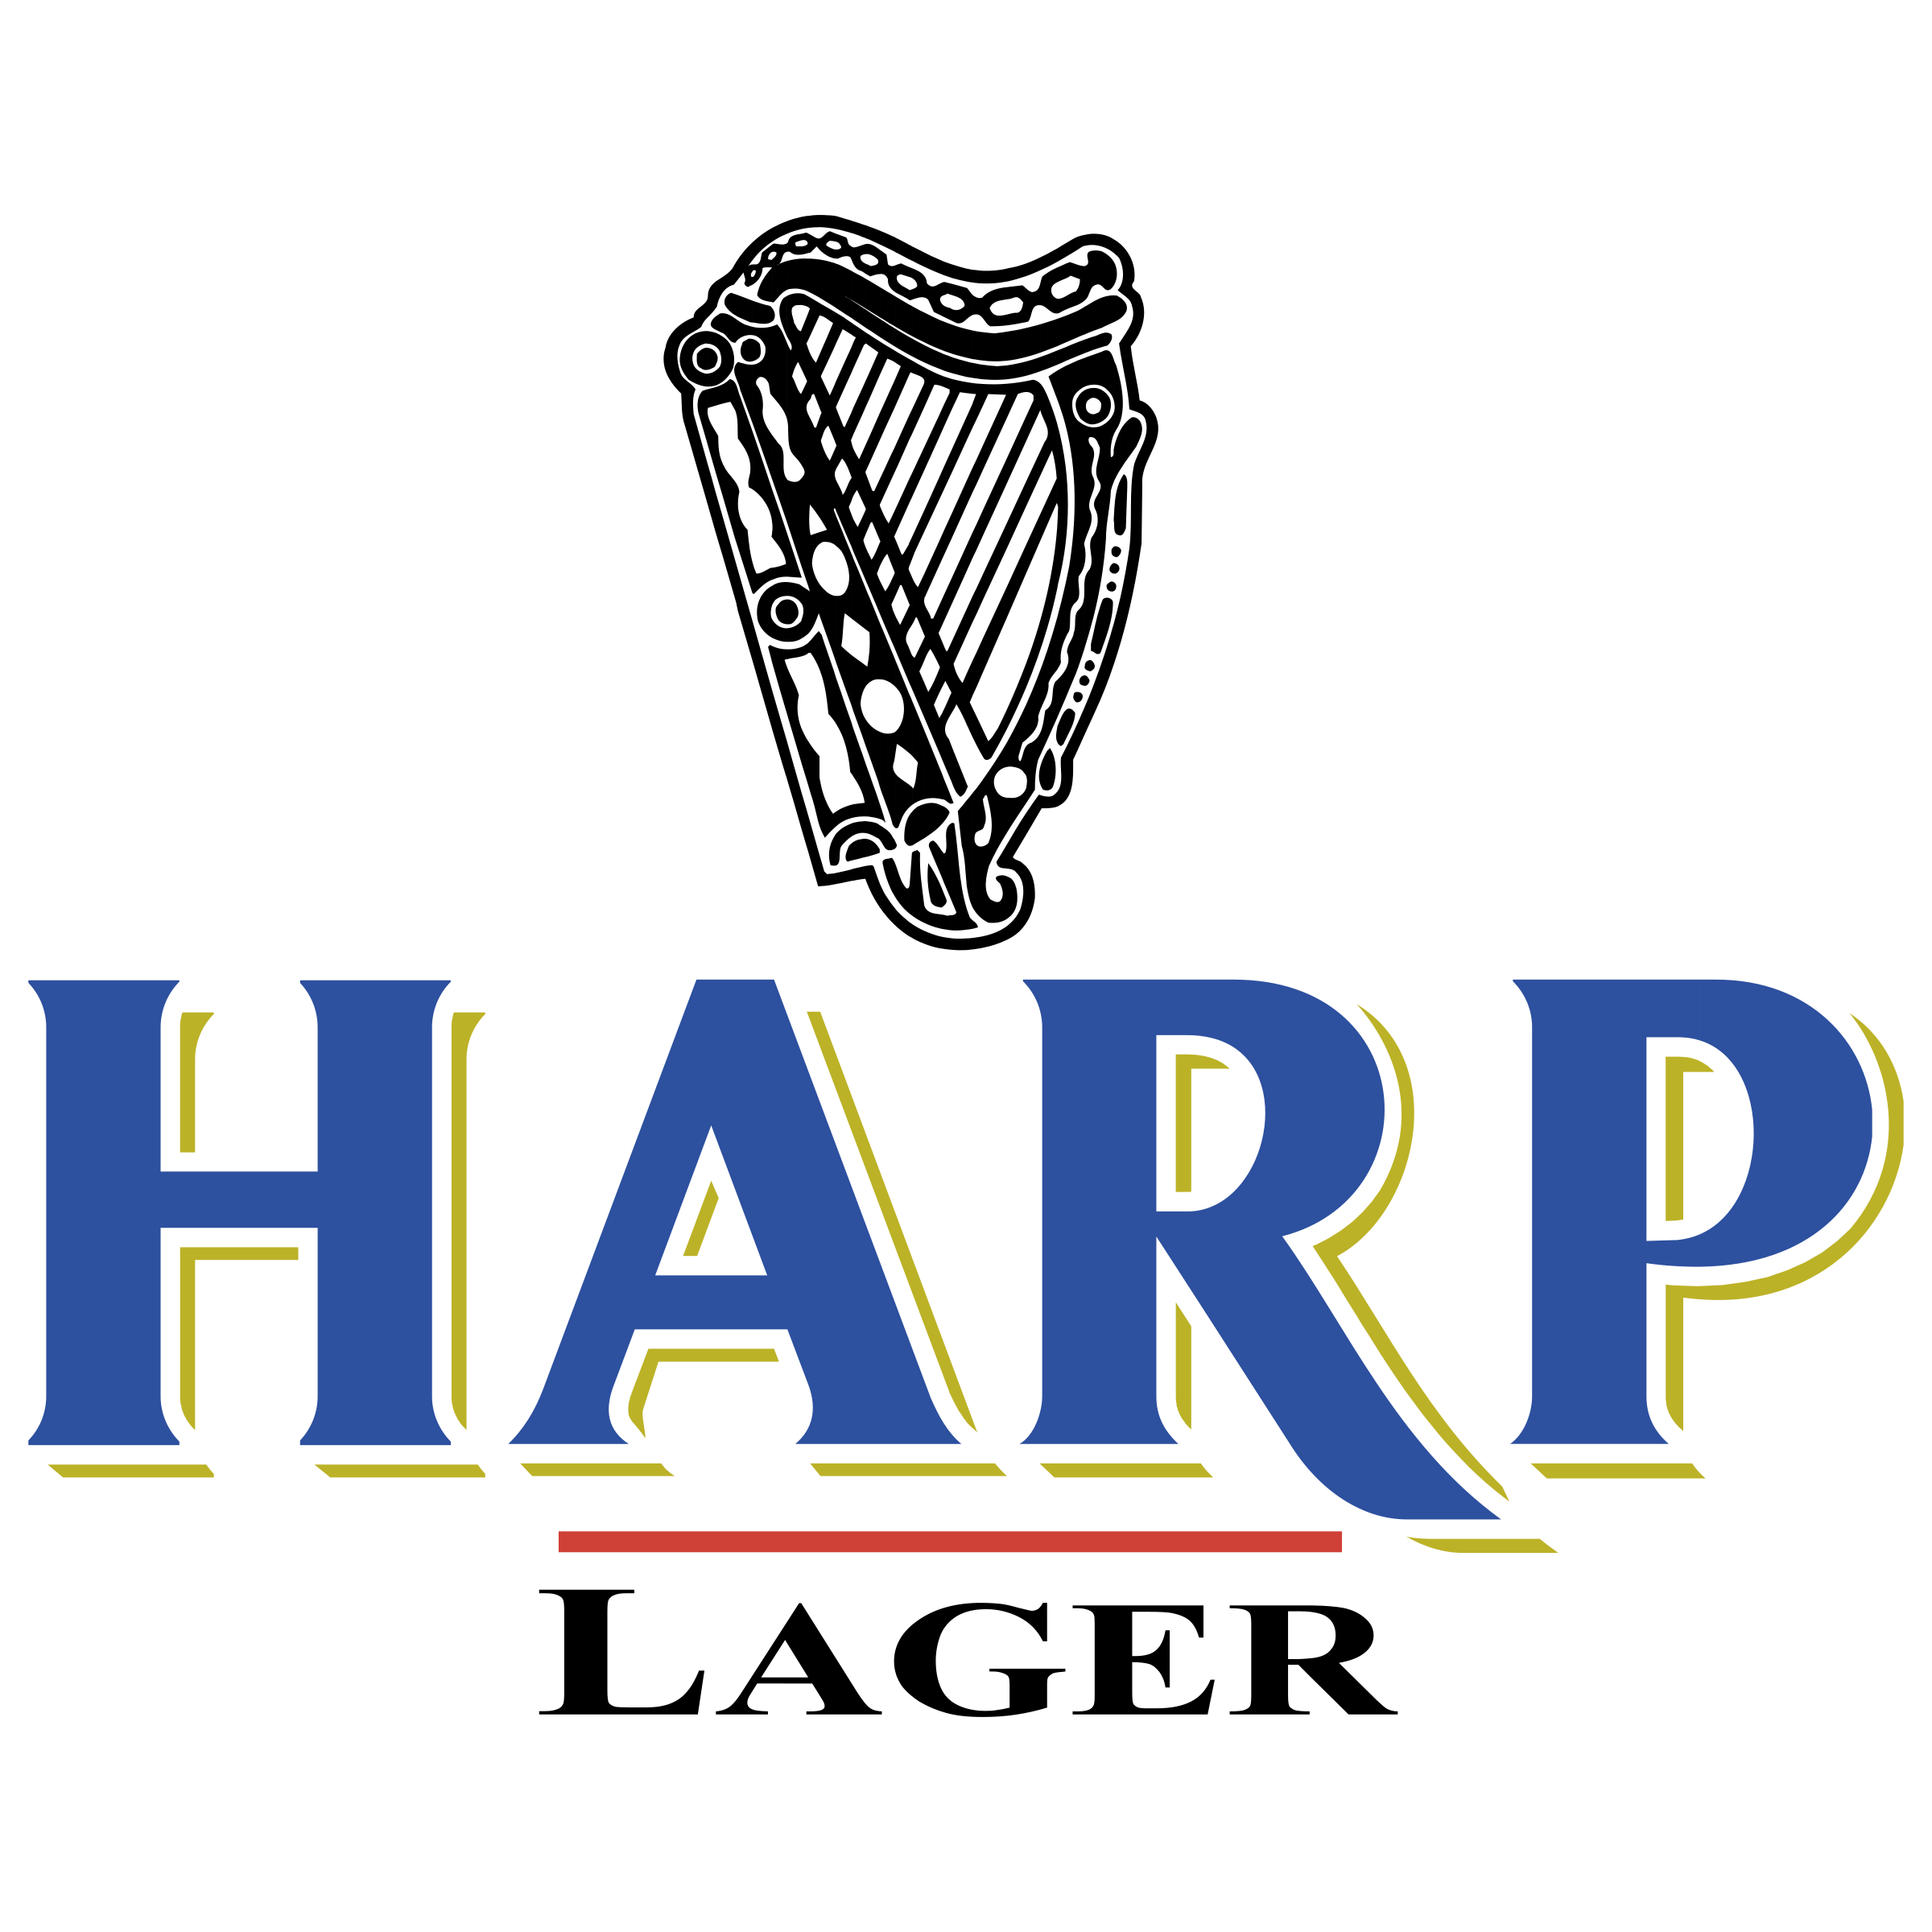 harp-lager-1-logo-png-transparent.png